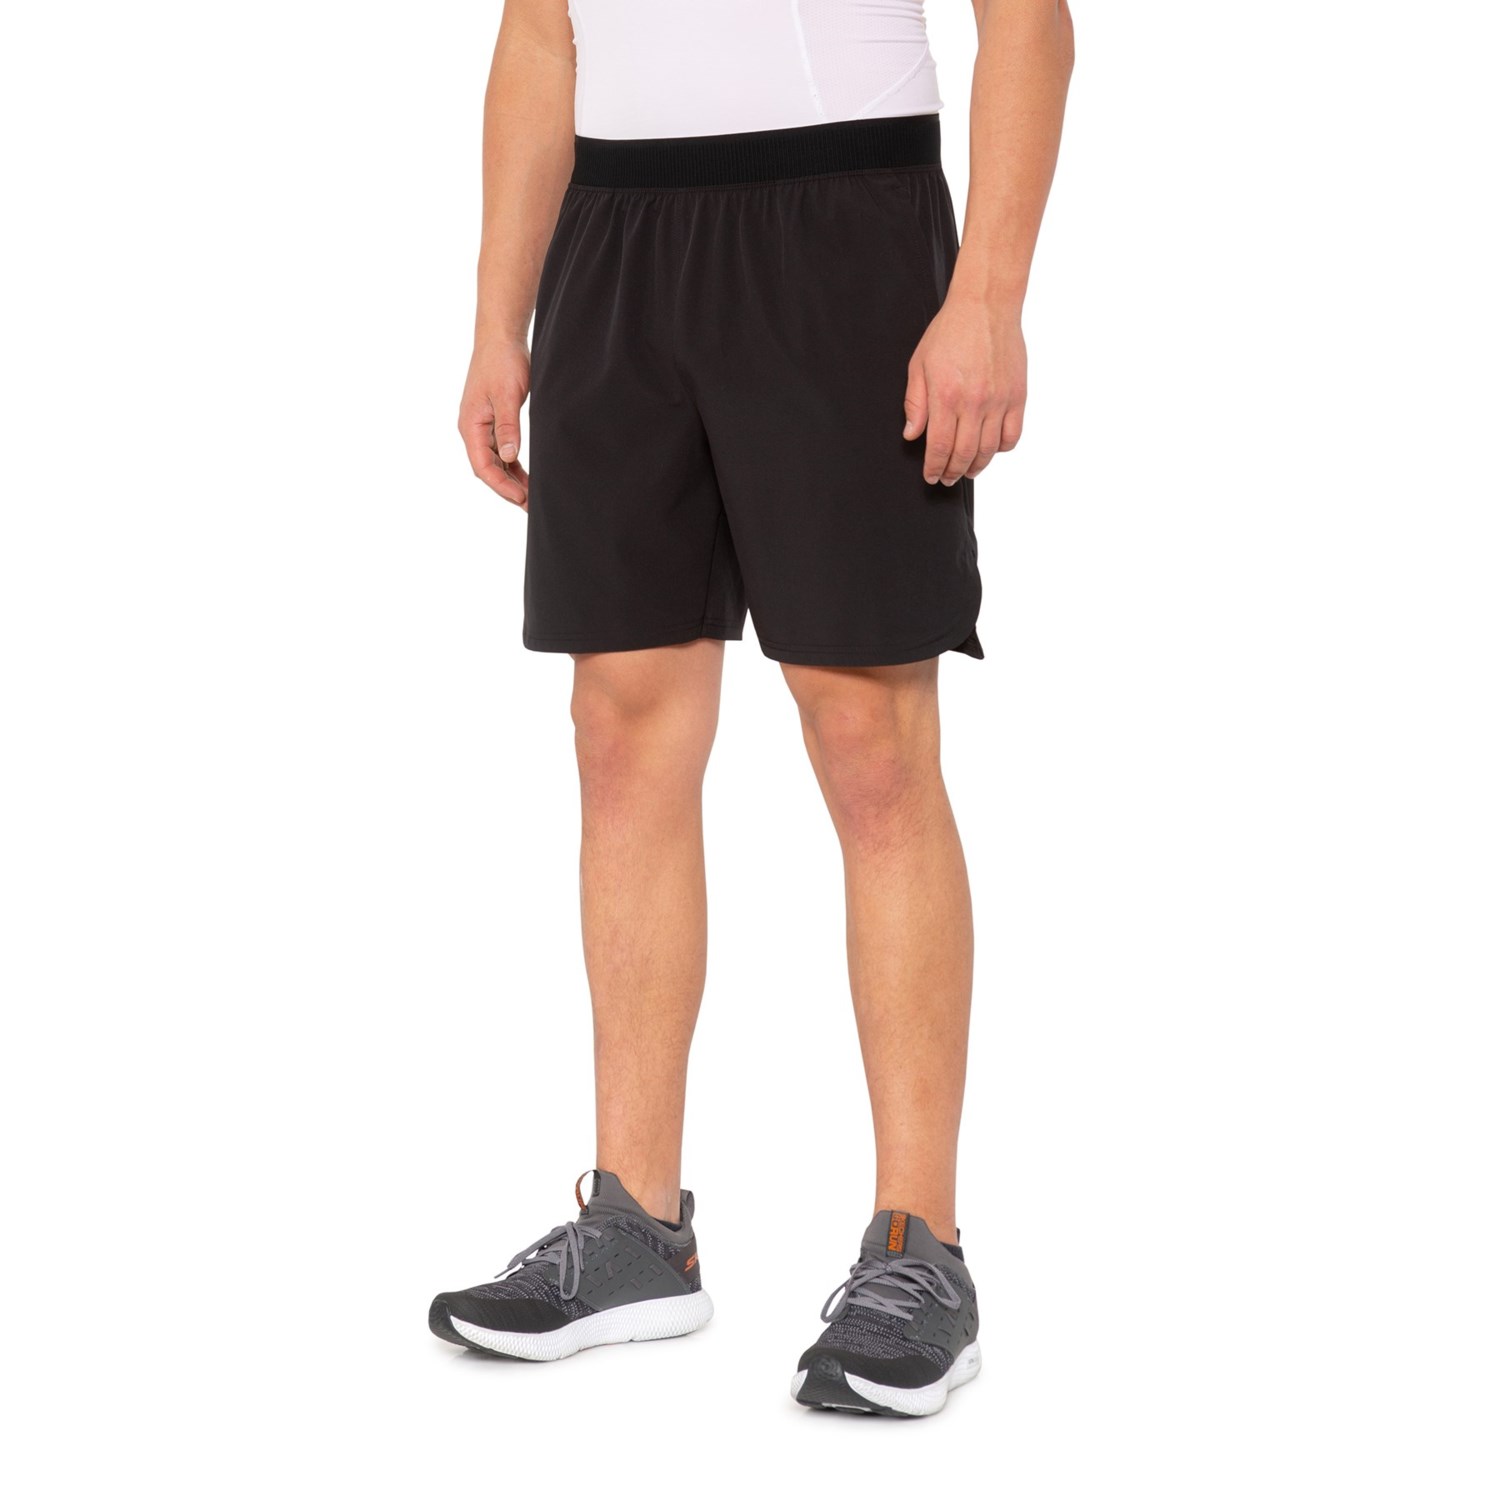 Skora Leader Unlined Shorts (For Men) - Save 27%